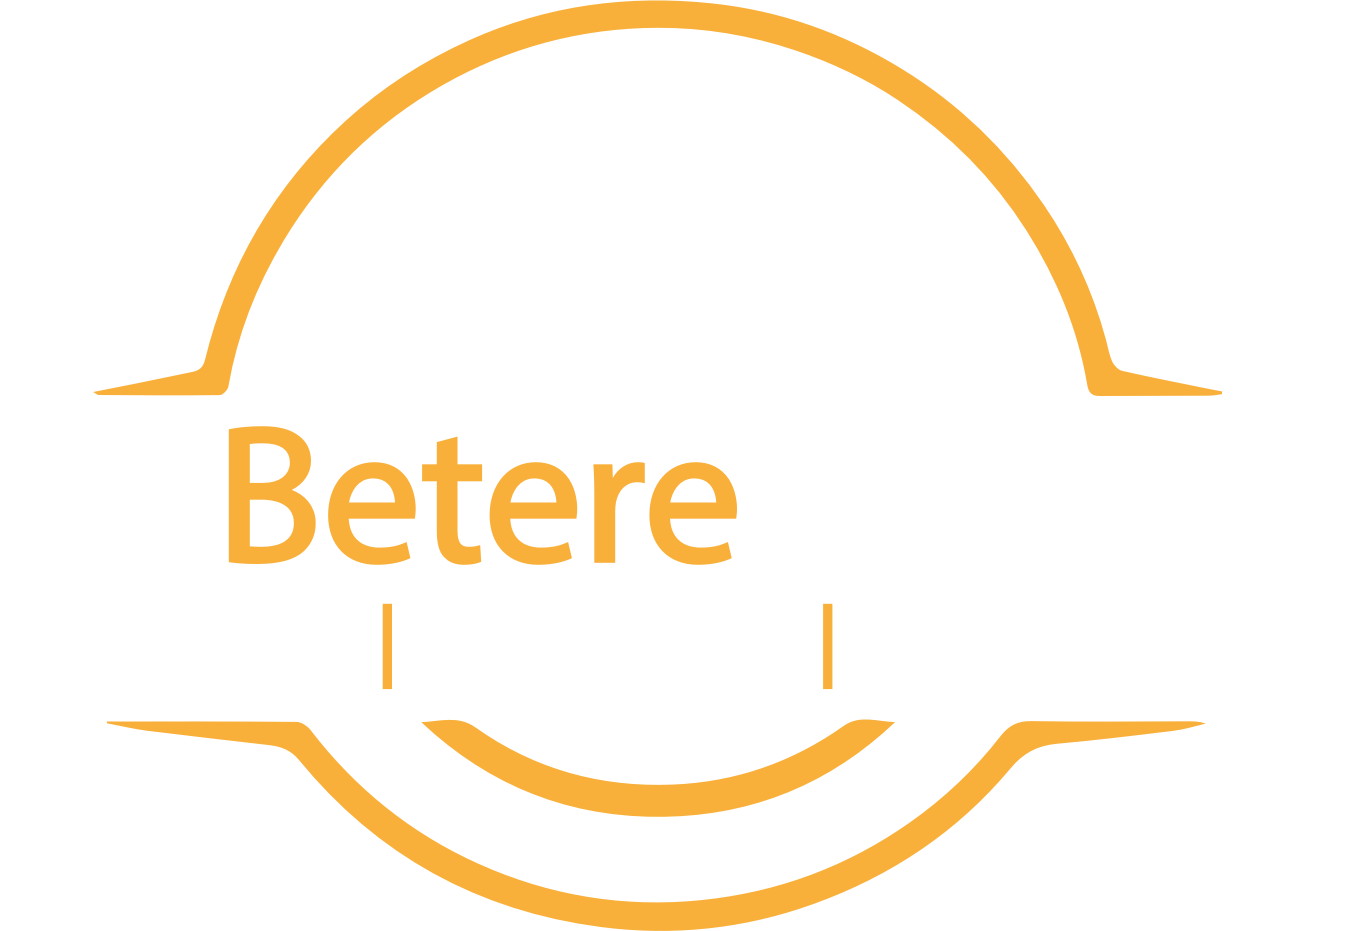 DeBetereAuto logo